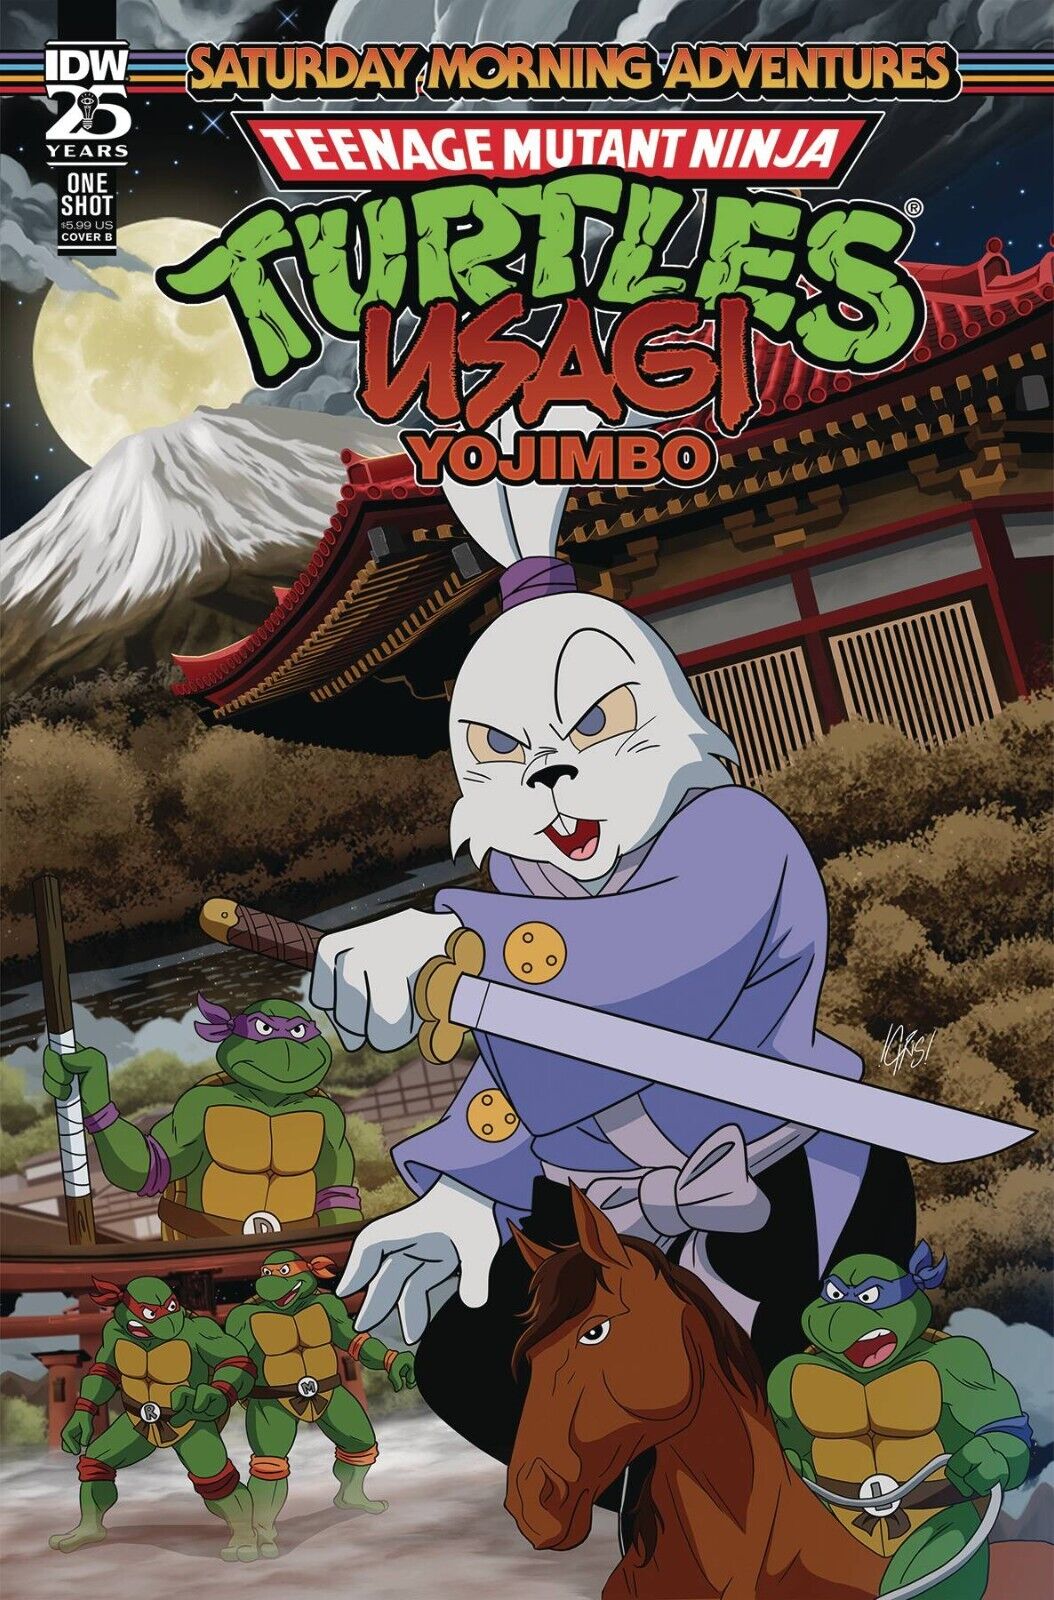 TMNT Usagi Yojimbo Saturday Morning Adventures #1 Cover B